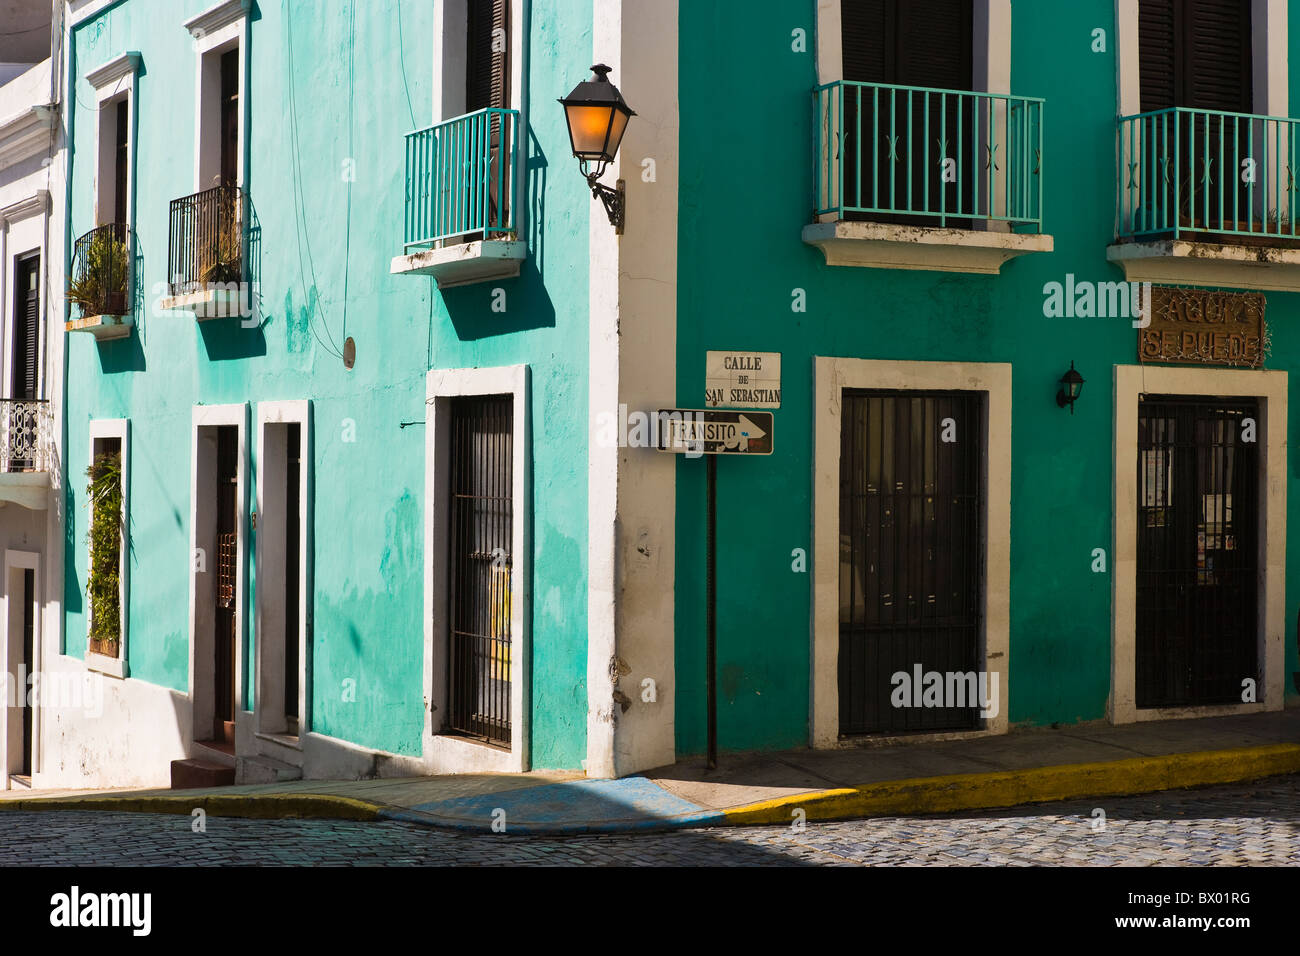 Calle de San Sebastian, Old San JUan, Puerto Rico Stock Photo